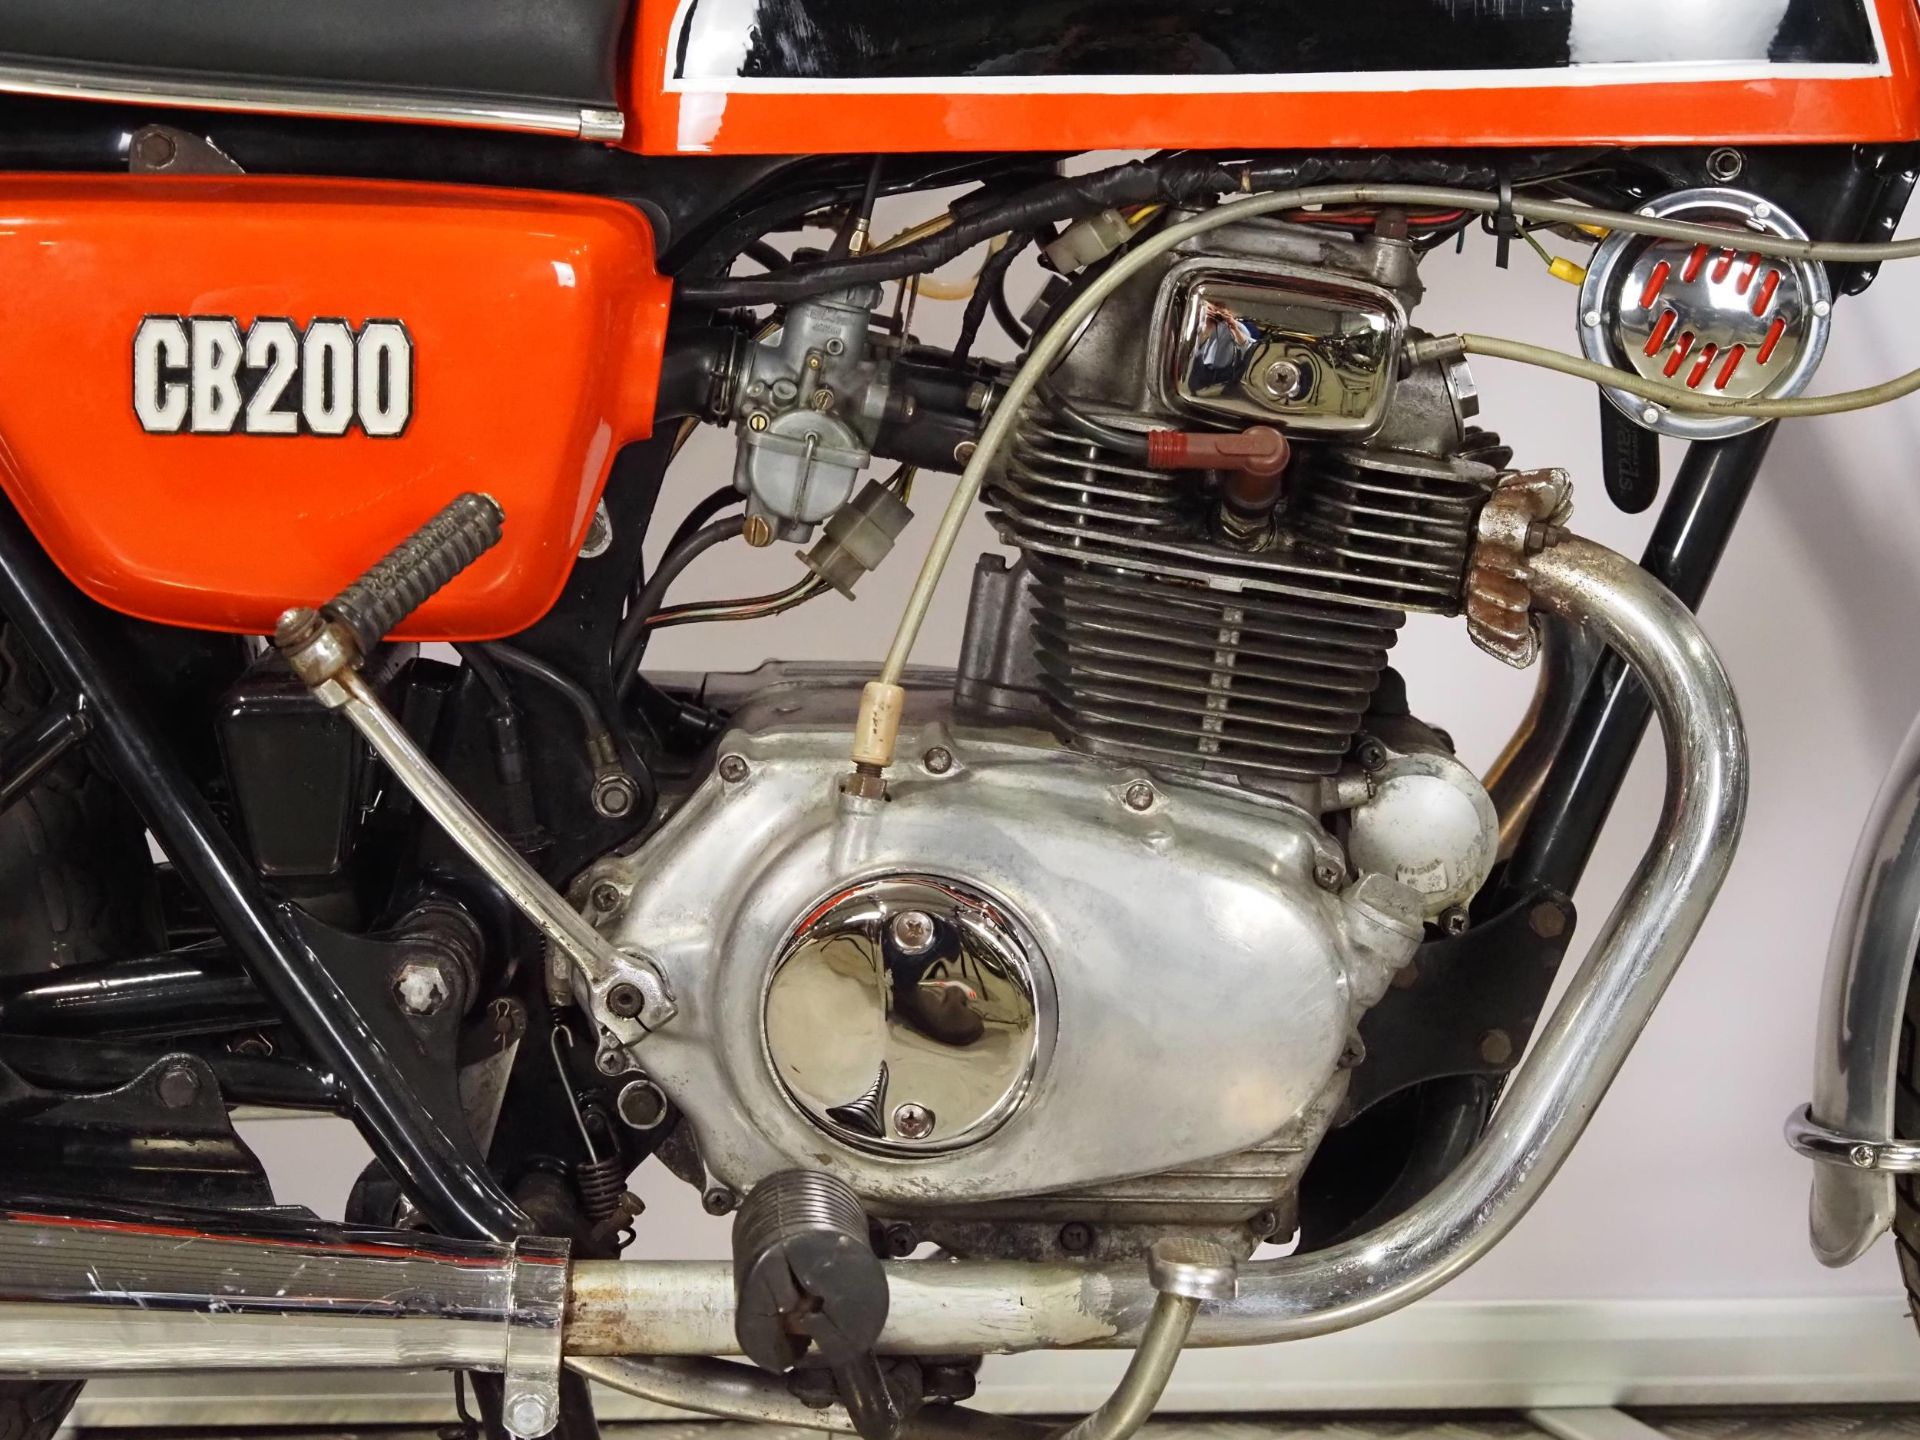 Honda CB200 motorcycle. 1977. 198cc Frame No. CB200 1039706 Engine No. CB200-1041972 Runs and rides. - Image 4 of 6